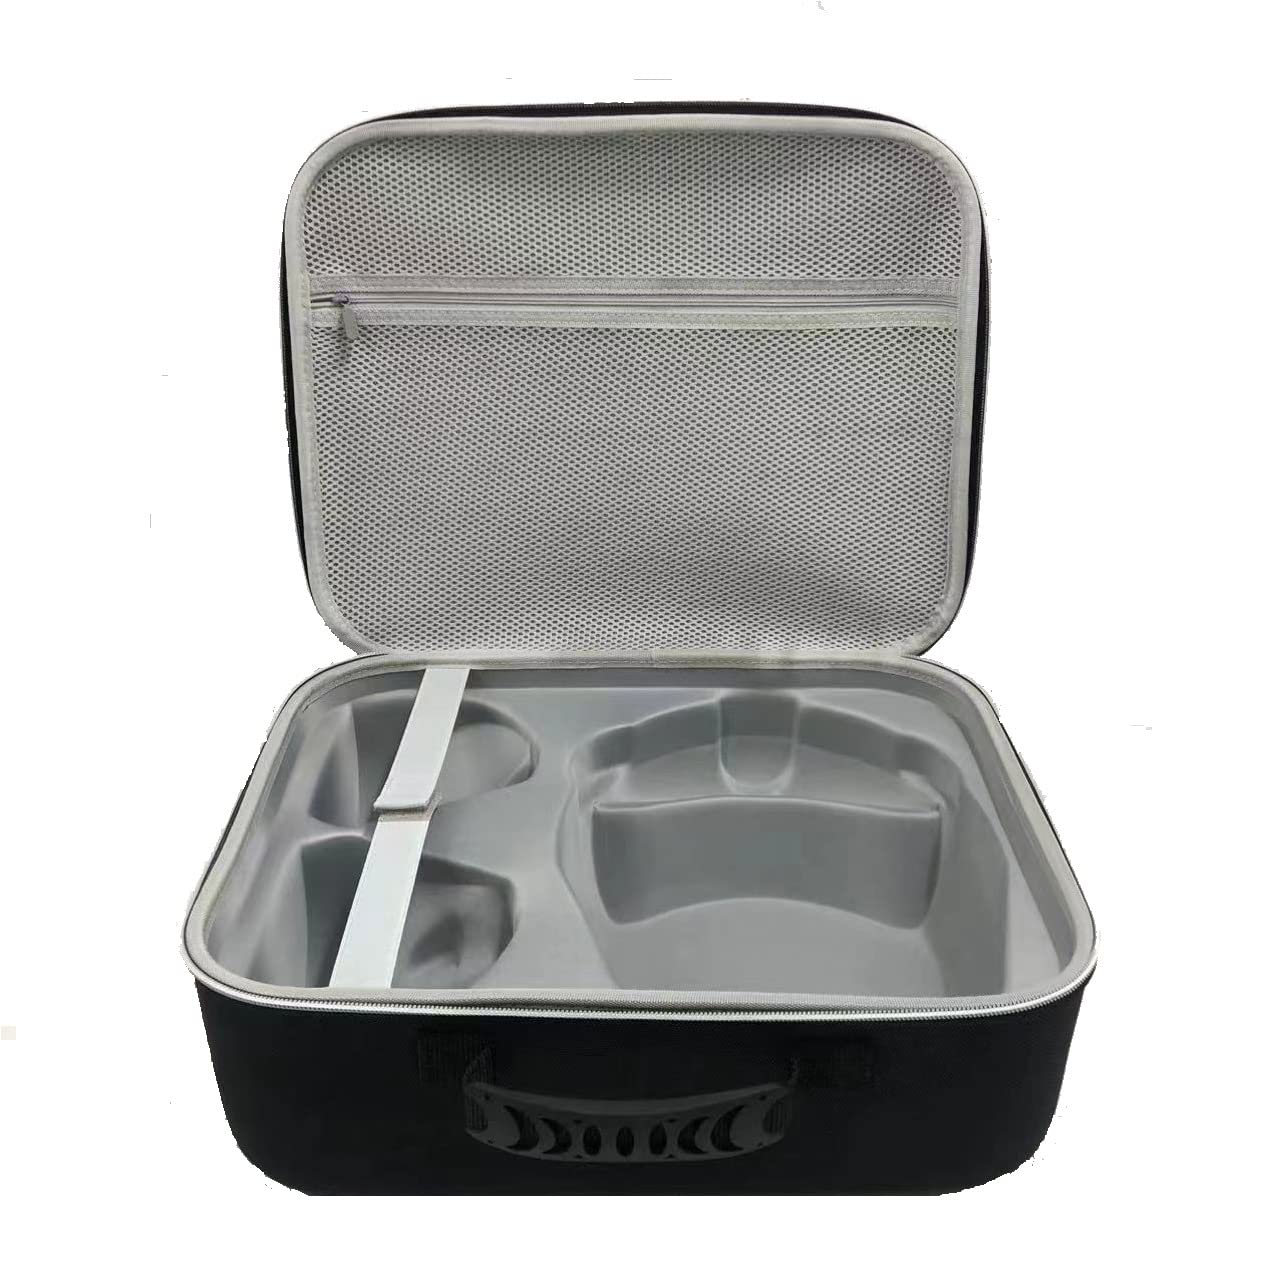 Tragetasche kompatibel für PS5 VR2/PS VR2, harte Reisetasche, schützende Aufbewahrungstasche, Schutztasche, Box für VR-Brille, Gaming-Zubehör, multifunktionale EVA-Schutzhülle von ZOANCC